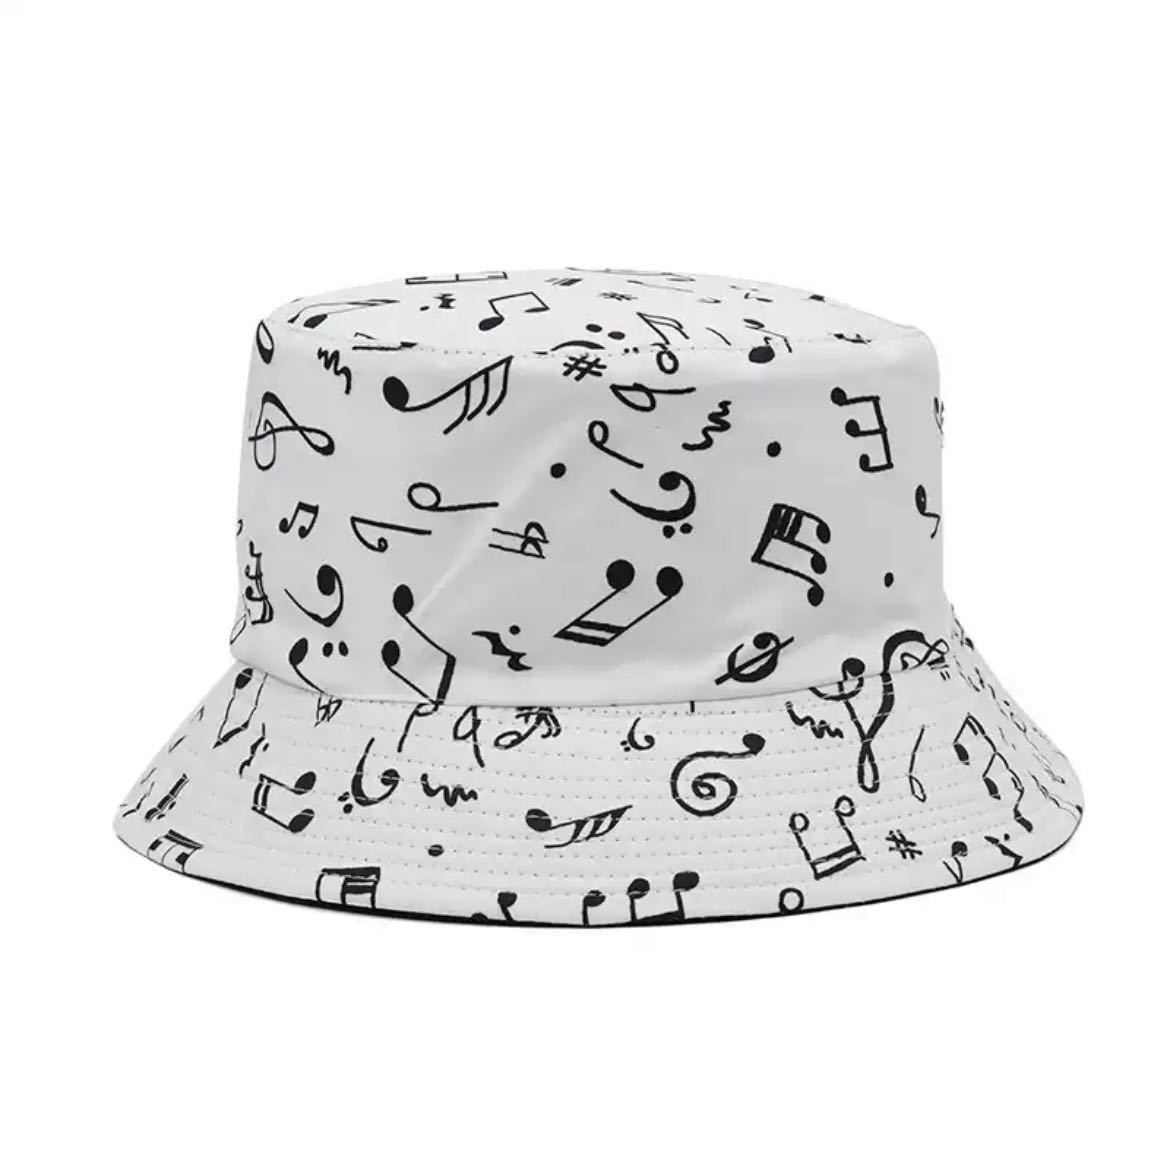 バケットハット 帽子 ハット キャップ ファッション アクセサリー 小物 ユニセックス 音符 音楽 ミュージック 2580_画像1